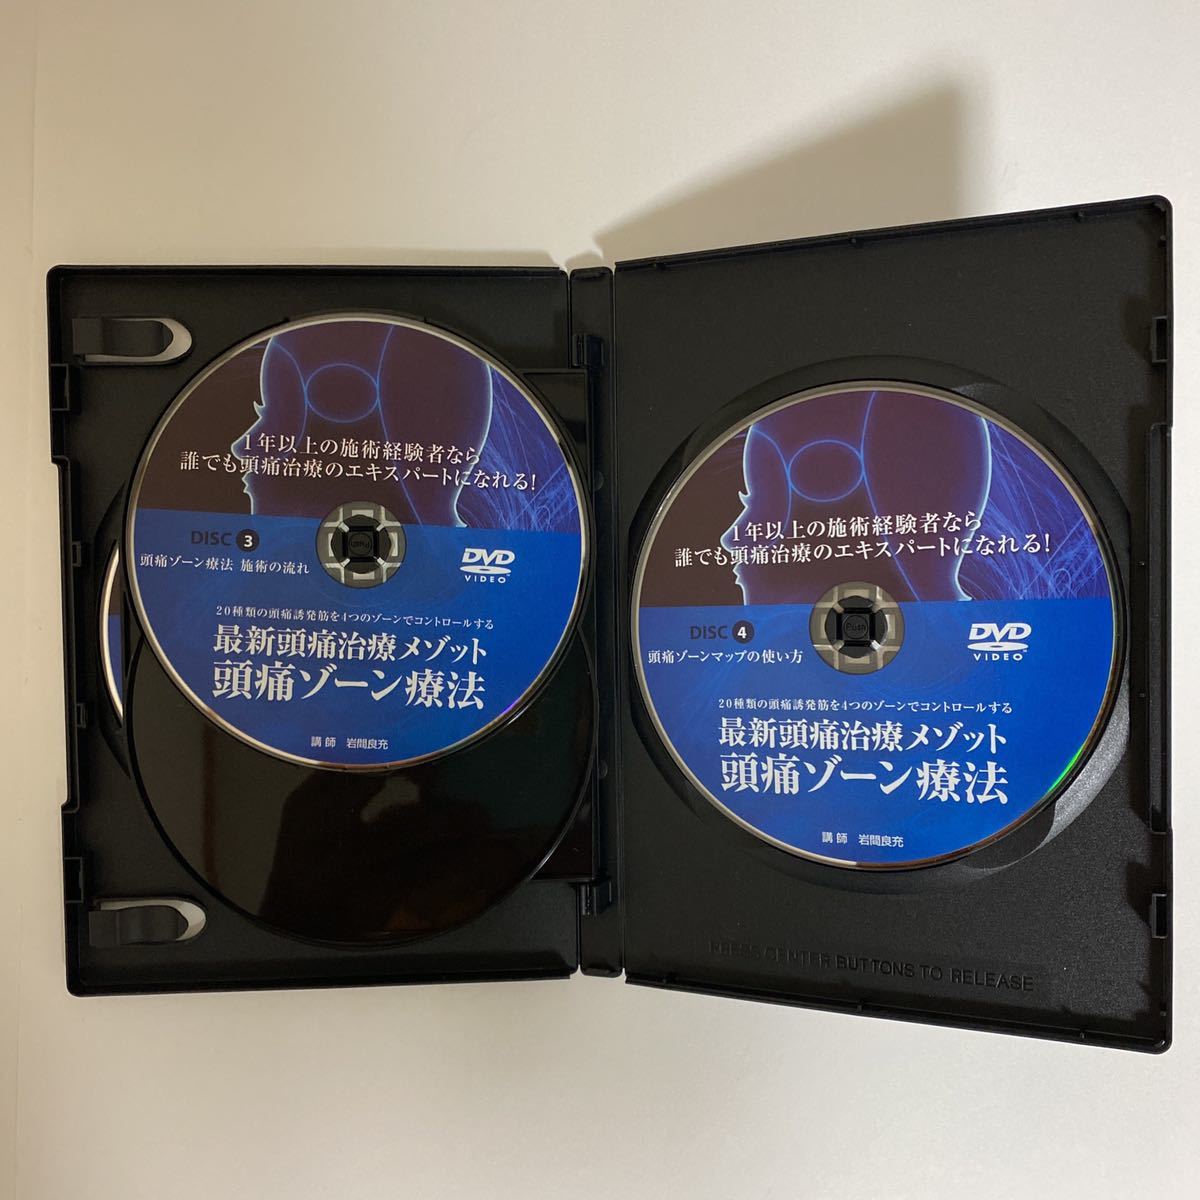 整体DVD計5枚【岩間式活性導法 -皮雀-】【最新頭痛治療メゾット 頭痛 